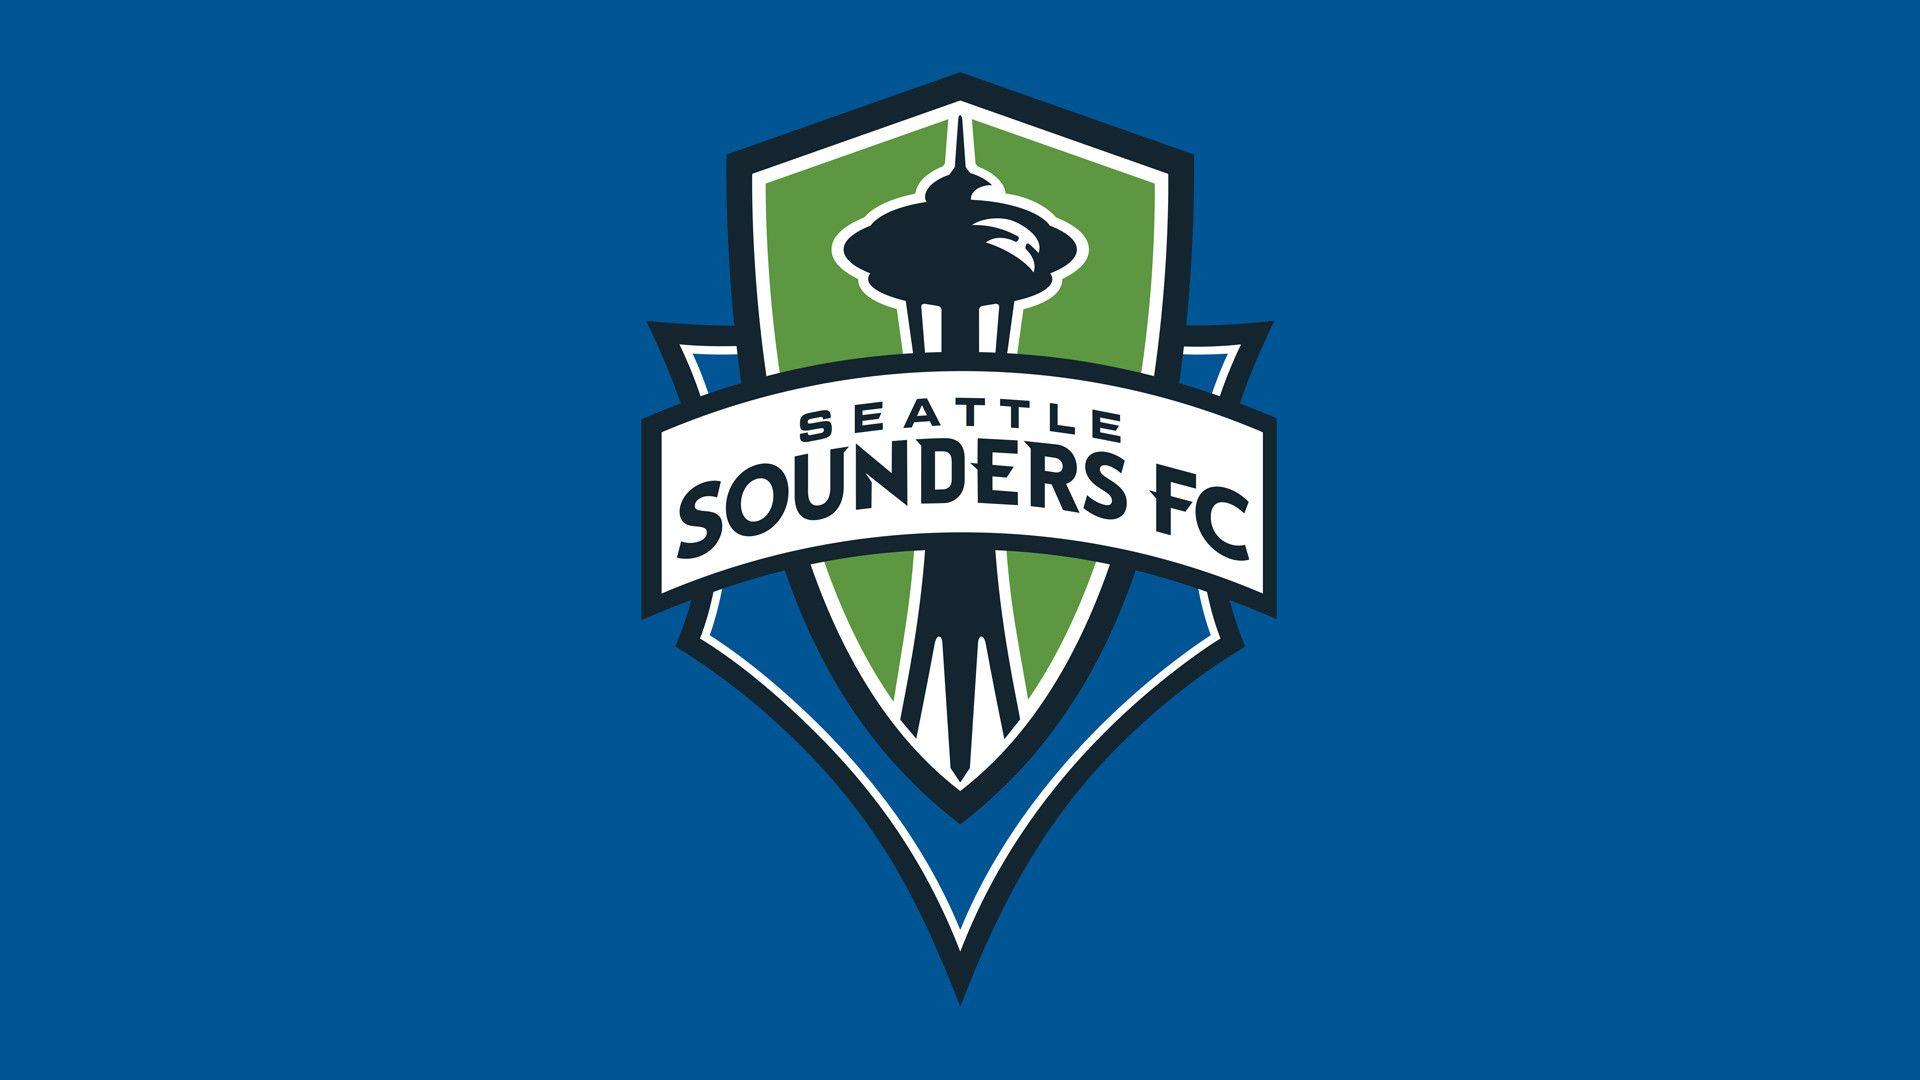 MLS Seattle Sounders FC Logo wallpaper 2018 in Soccer